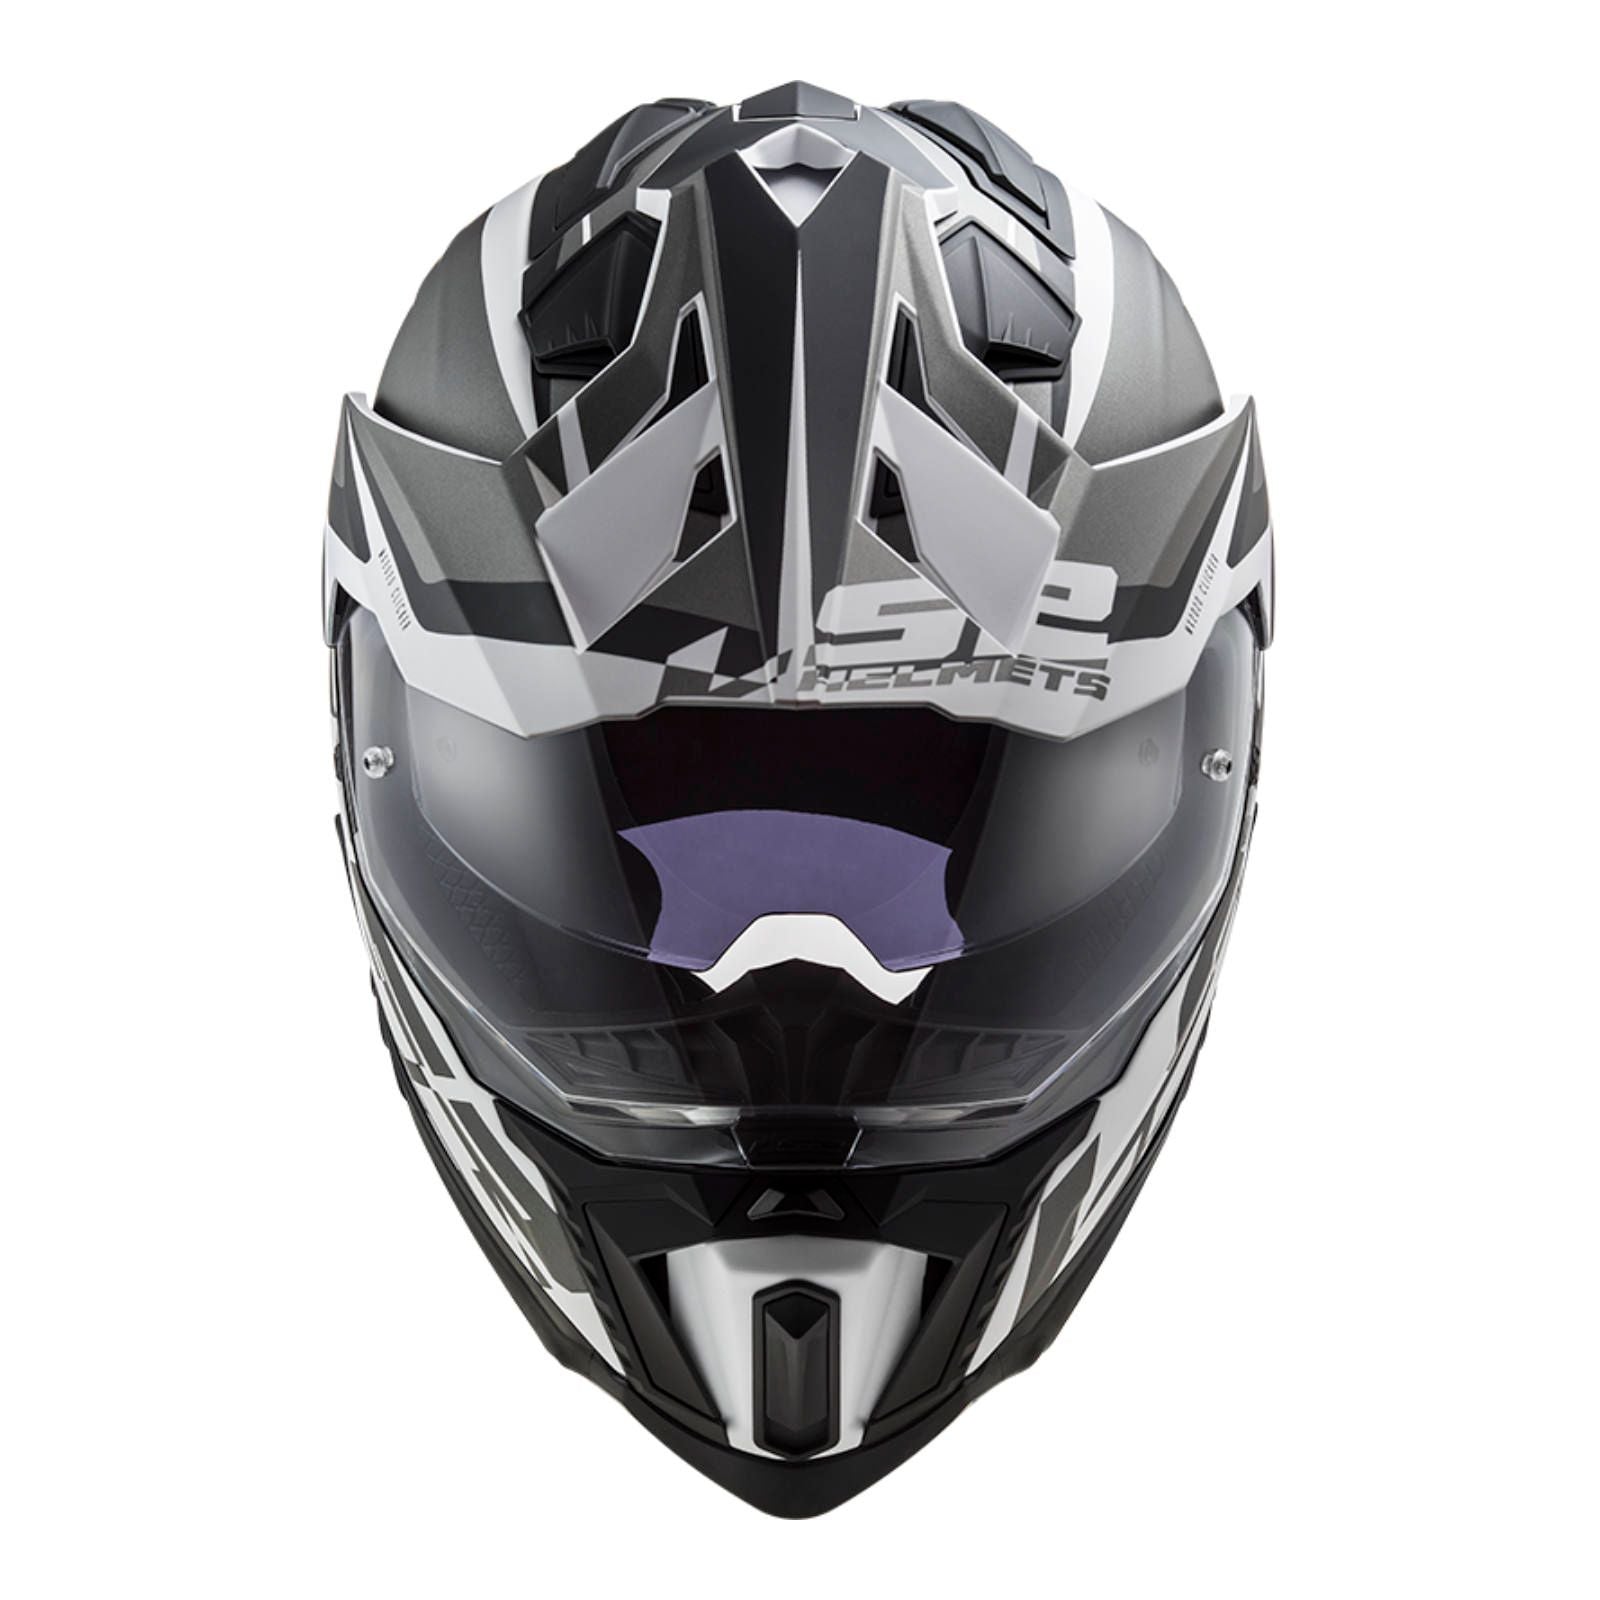 New LS2 Explorer Alter Helmet - Matte Black / White (L) #LS2MX701ALTMBWL